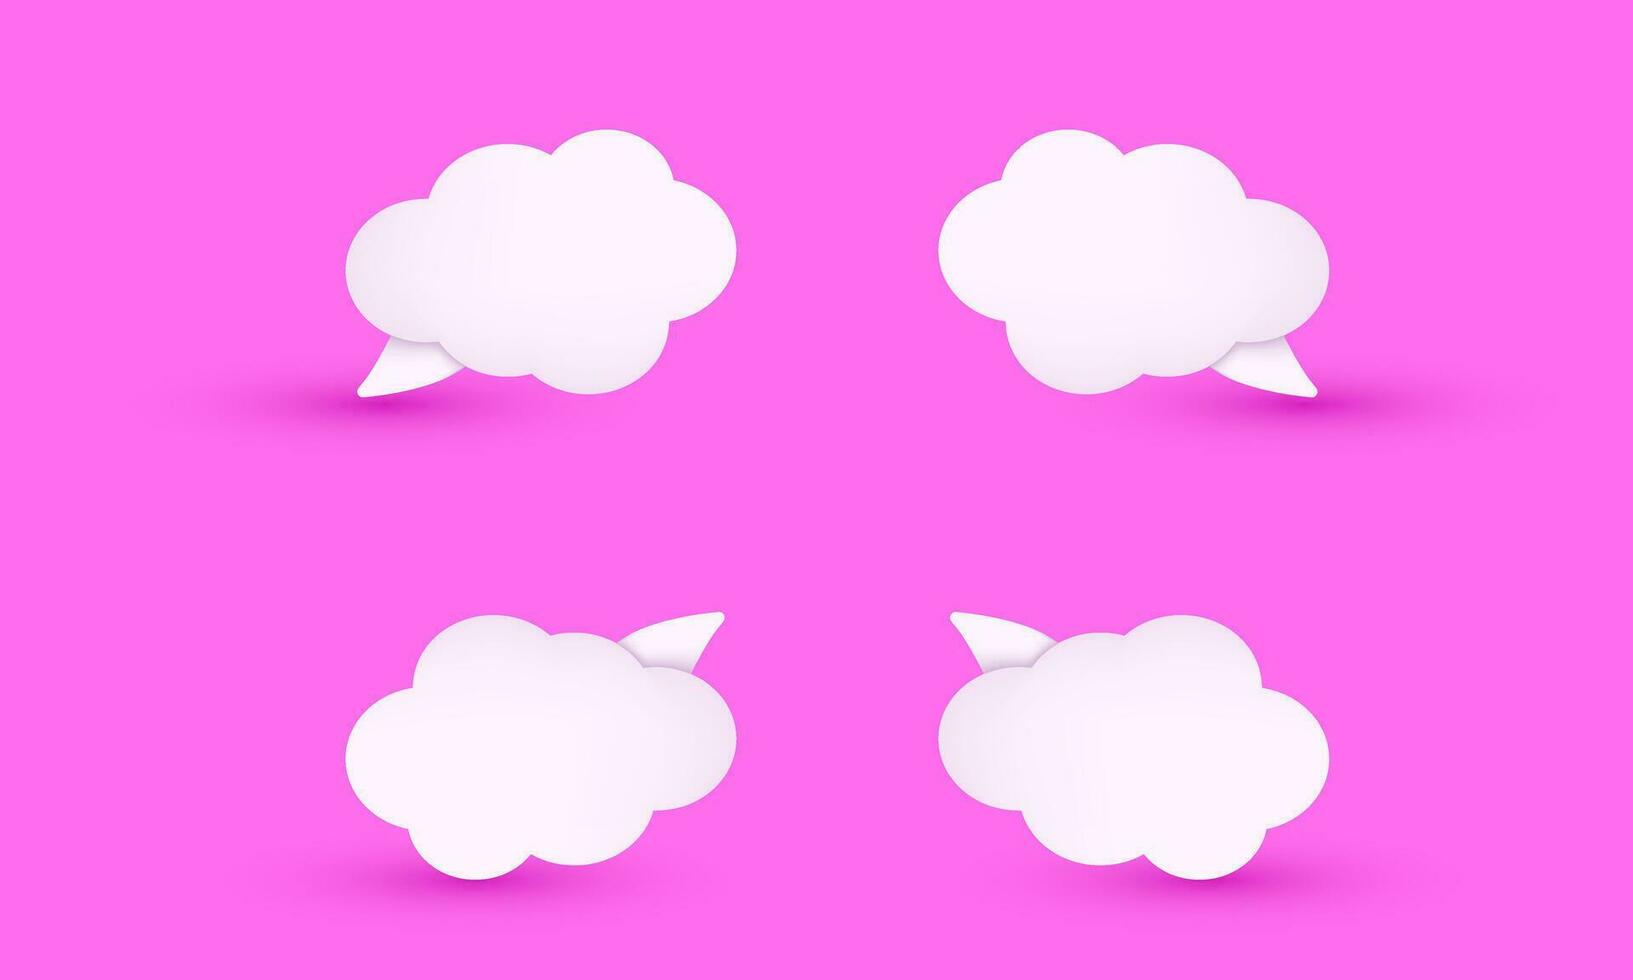 moderno 3d realistico rosa carino impostato collezione nube discorso bolla illustrazione di moda icona stile oggetto simboli isolato su sfondo vettore